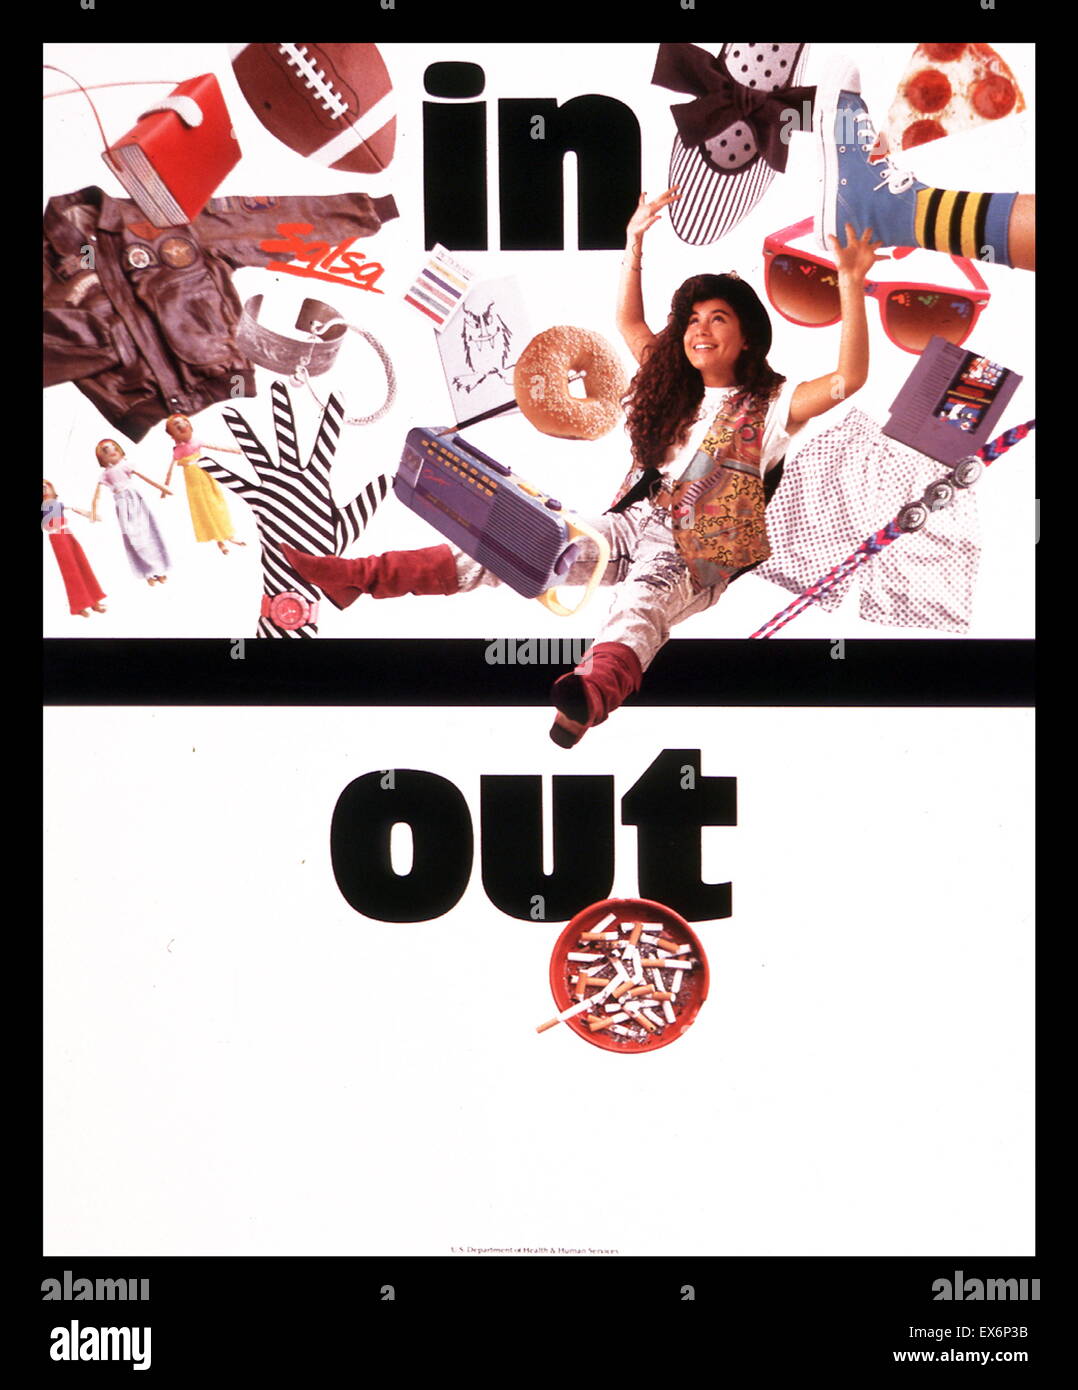 Rein raus. Ein 1994 amerikanische öffentliche Gesundheit Poster zur Sensibilisierung gegen das Rauchen von Zigaretten Stockfoto